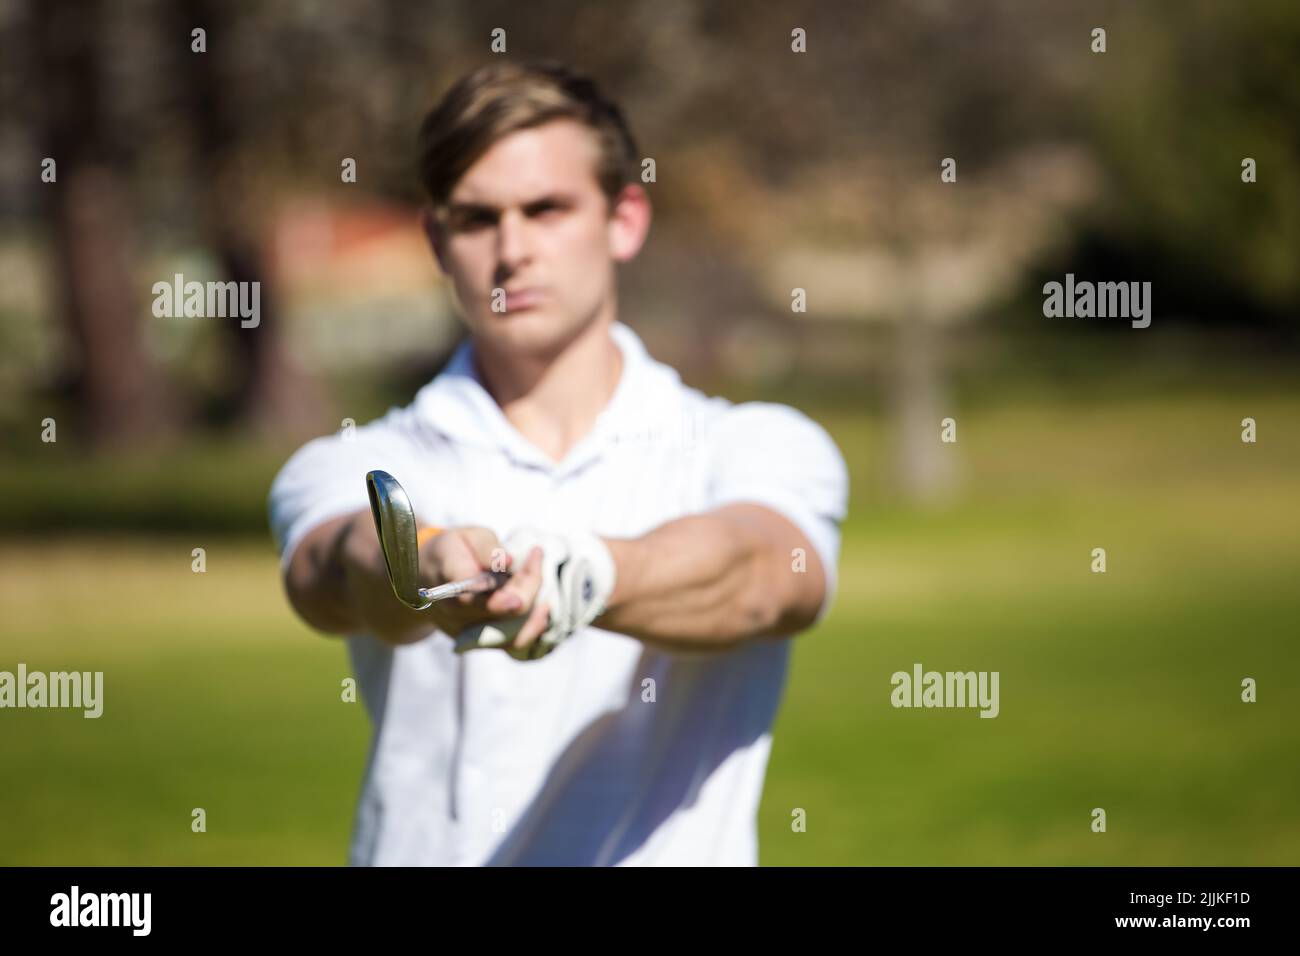 Ein junger kaukasischer Golfer, der sich auf einem Golfplatz vorbereitet, um eine Runde Golf zu spielen Stockfoto